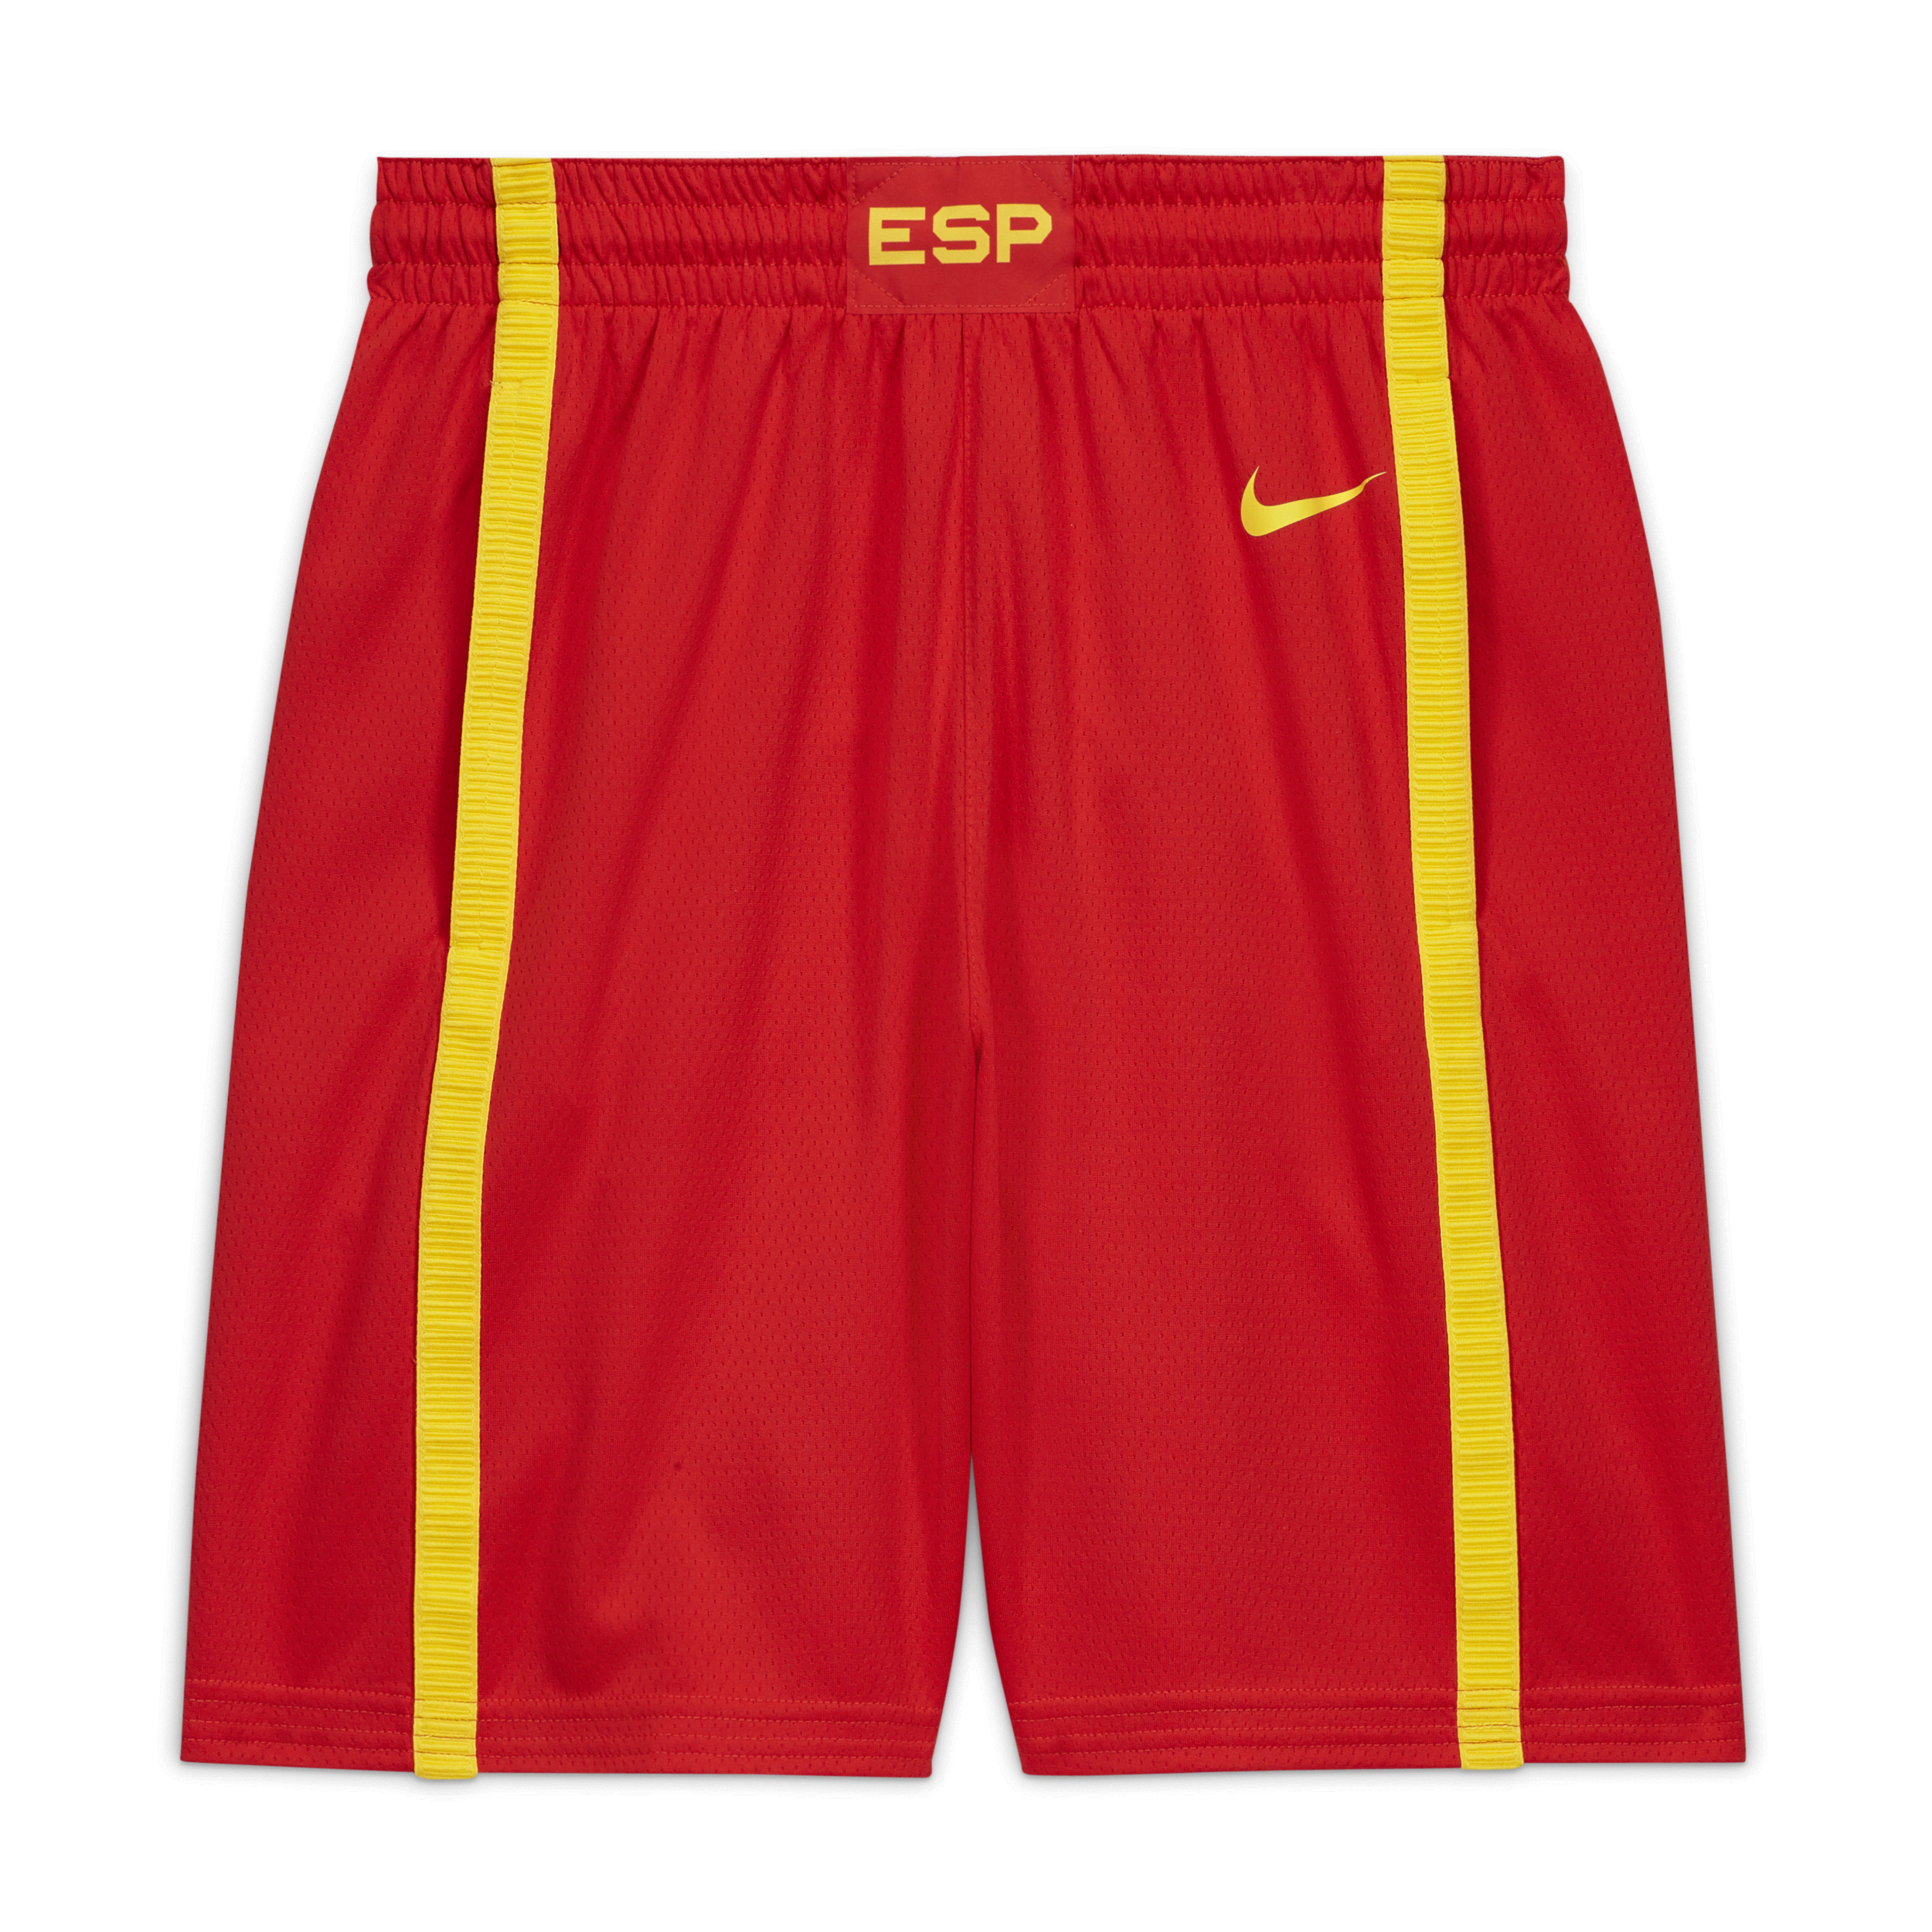 Spanien Nike (Road) Limited-basketballshorts til mænd - rød